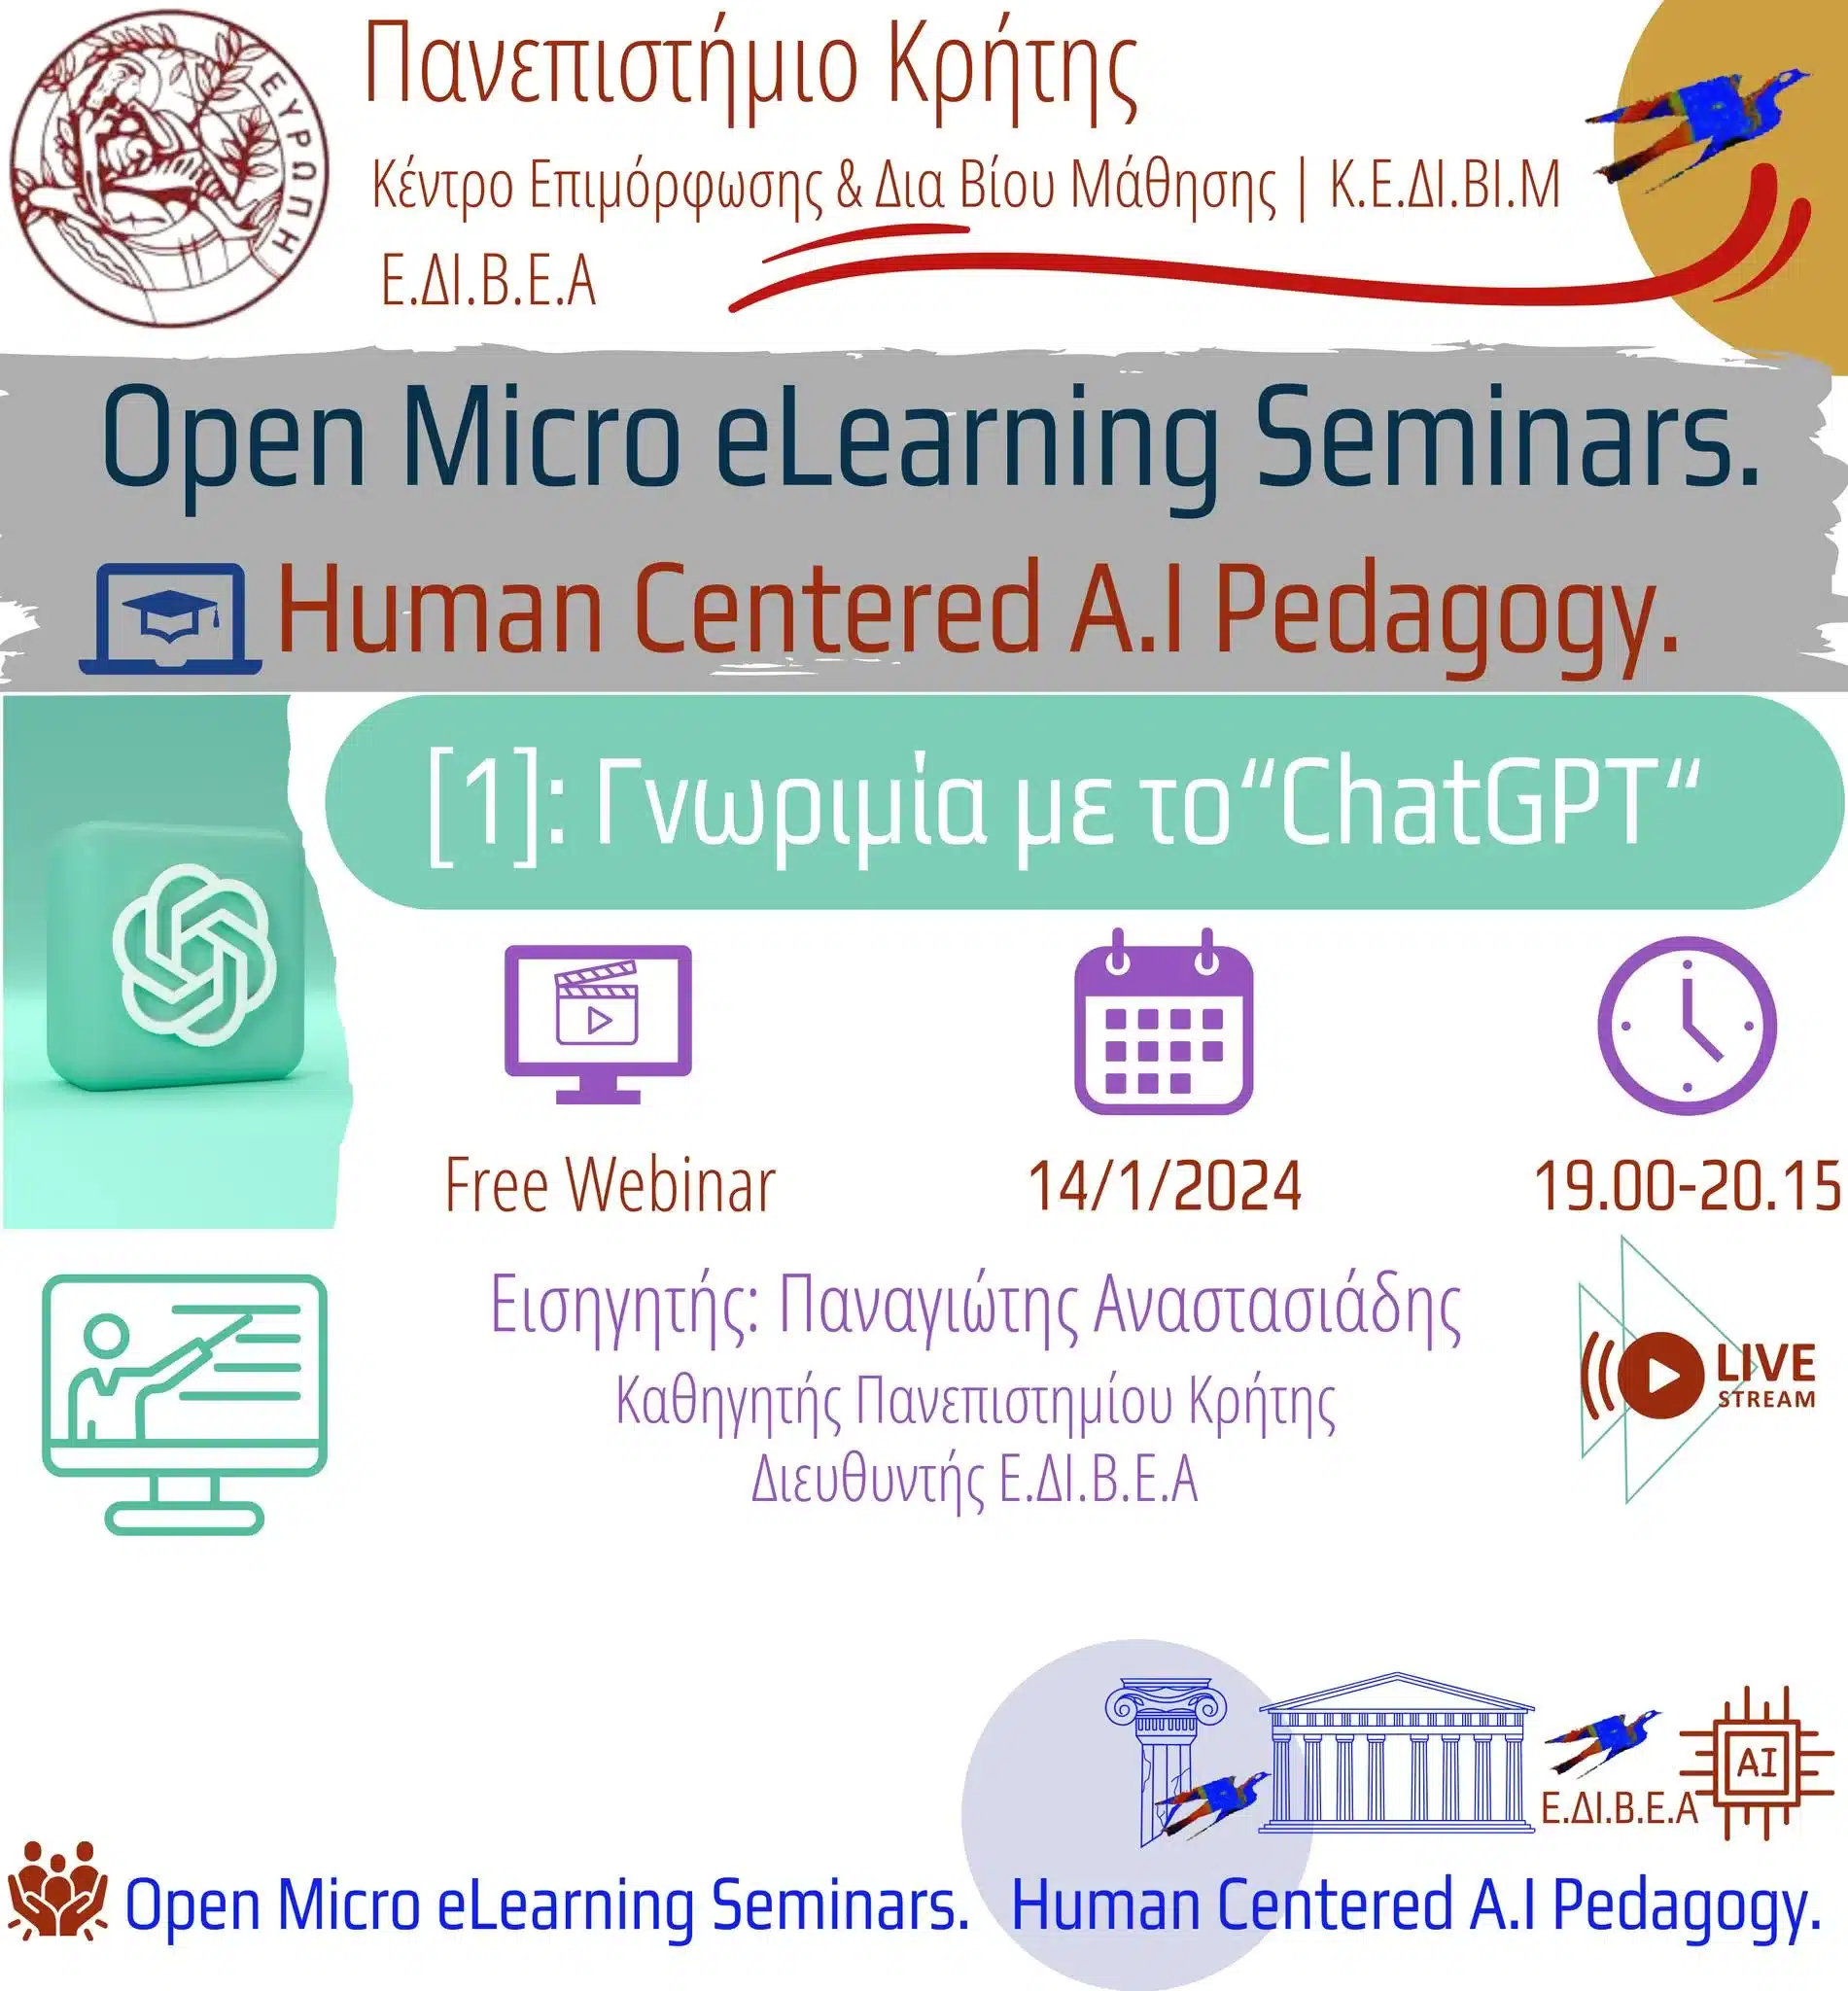 Δωρεάν σεμινάριο για την τεχνητή νοημοσύνη – Human Centered AI Pedagogy